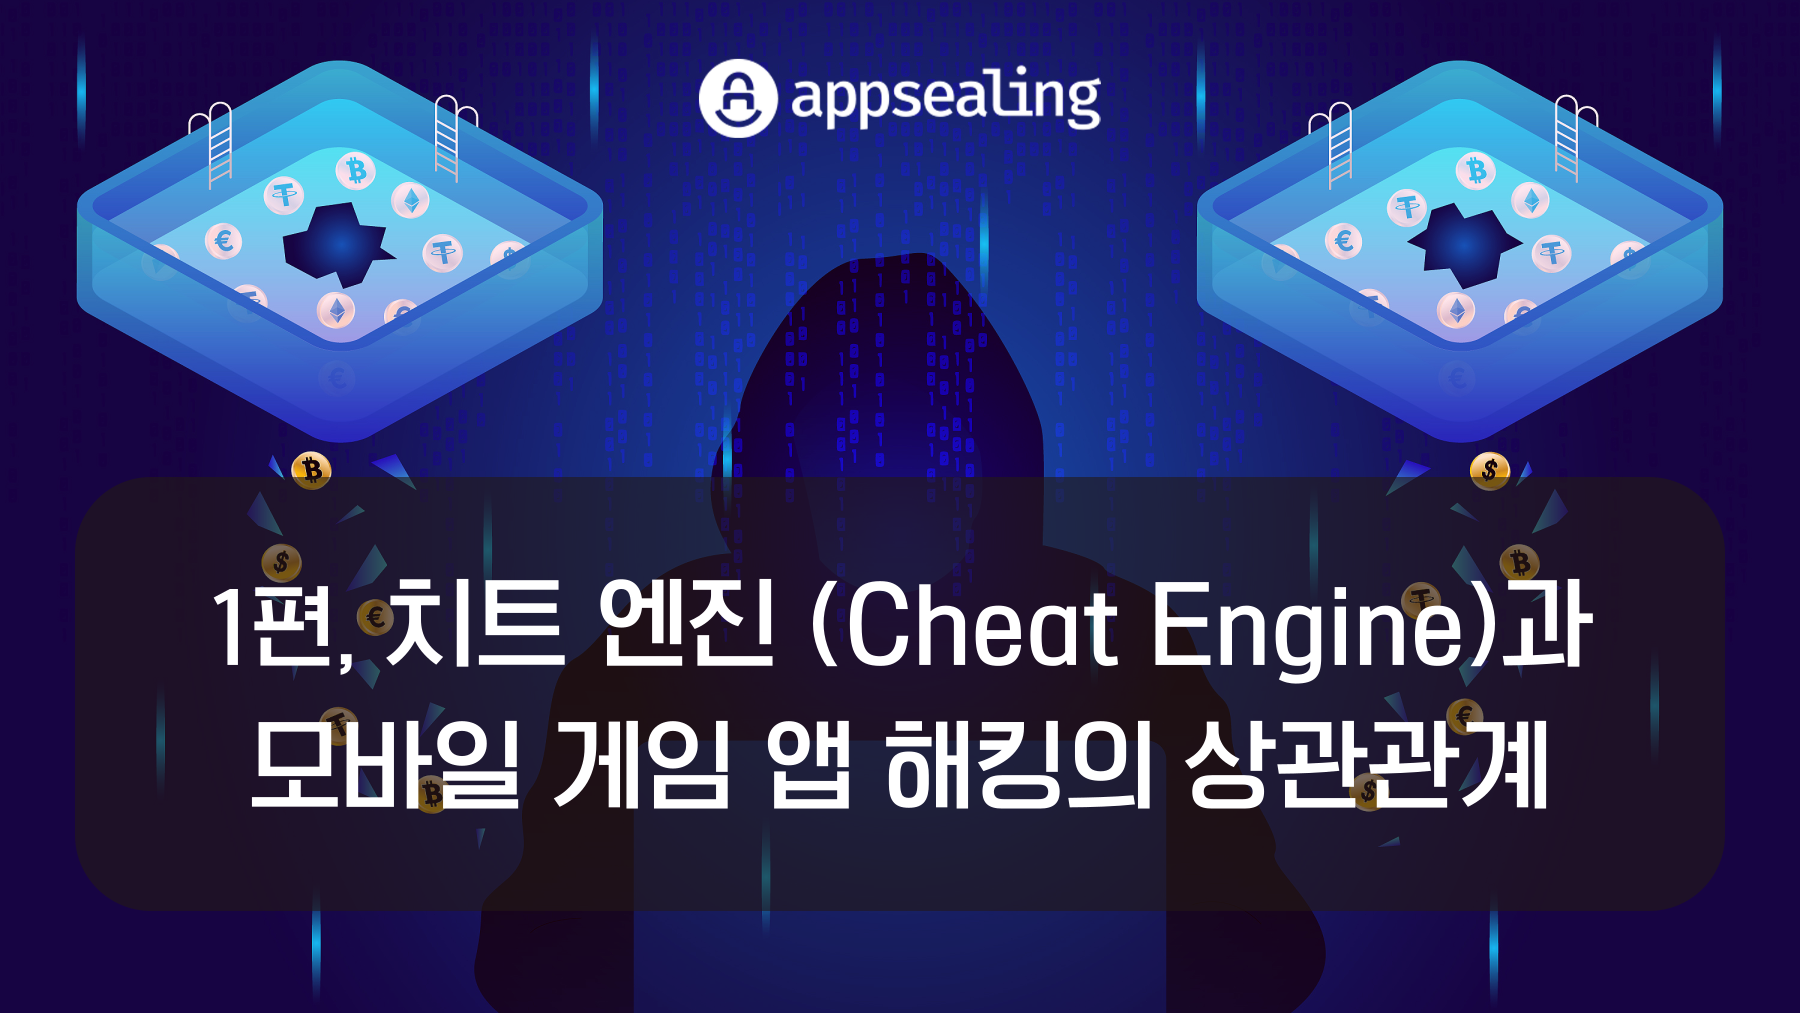 치트 엔진(Cheat Engine)과 모바일 게임 앱 해킹의 상관관계 1편